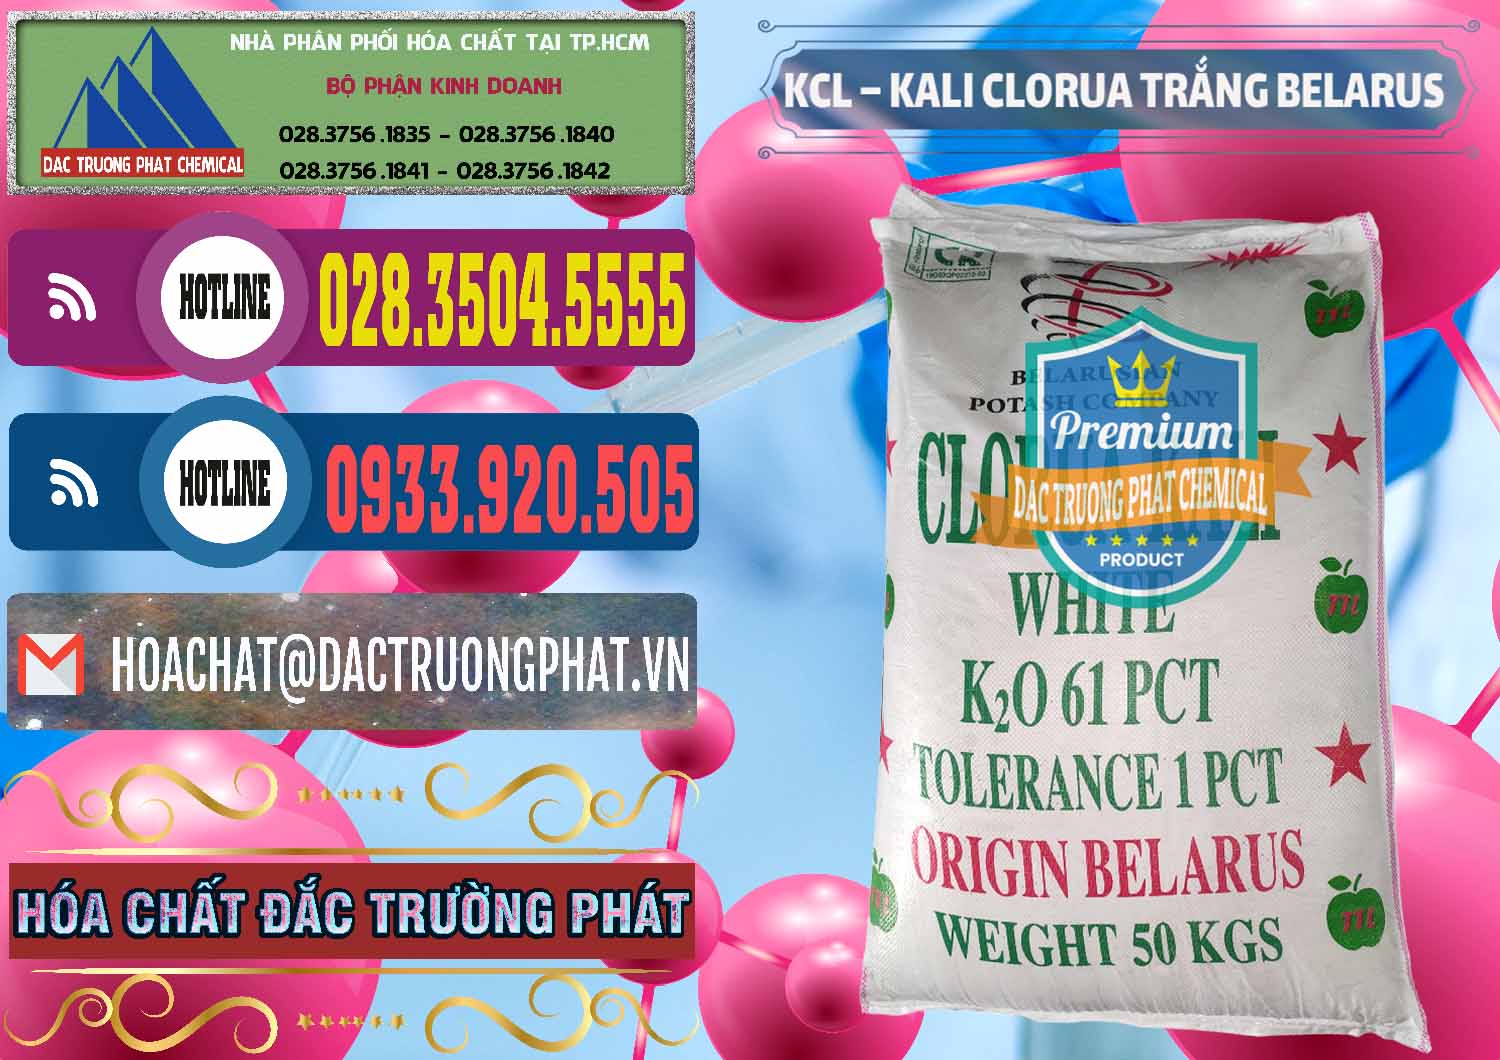 Đơn vị kinh doanh _ bán KCL – Kali Clorua Trắng Belarus - 0085 - Công ty chuyên kinh doanh và phân phối hóa chất tại TP.HCM - muabanhoachat.com.vn